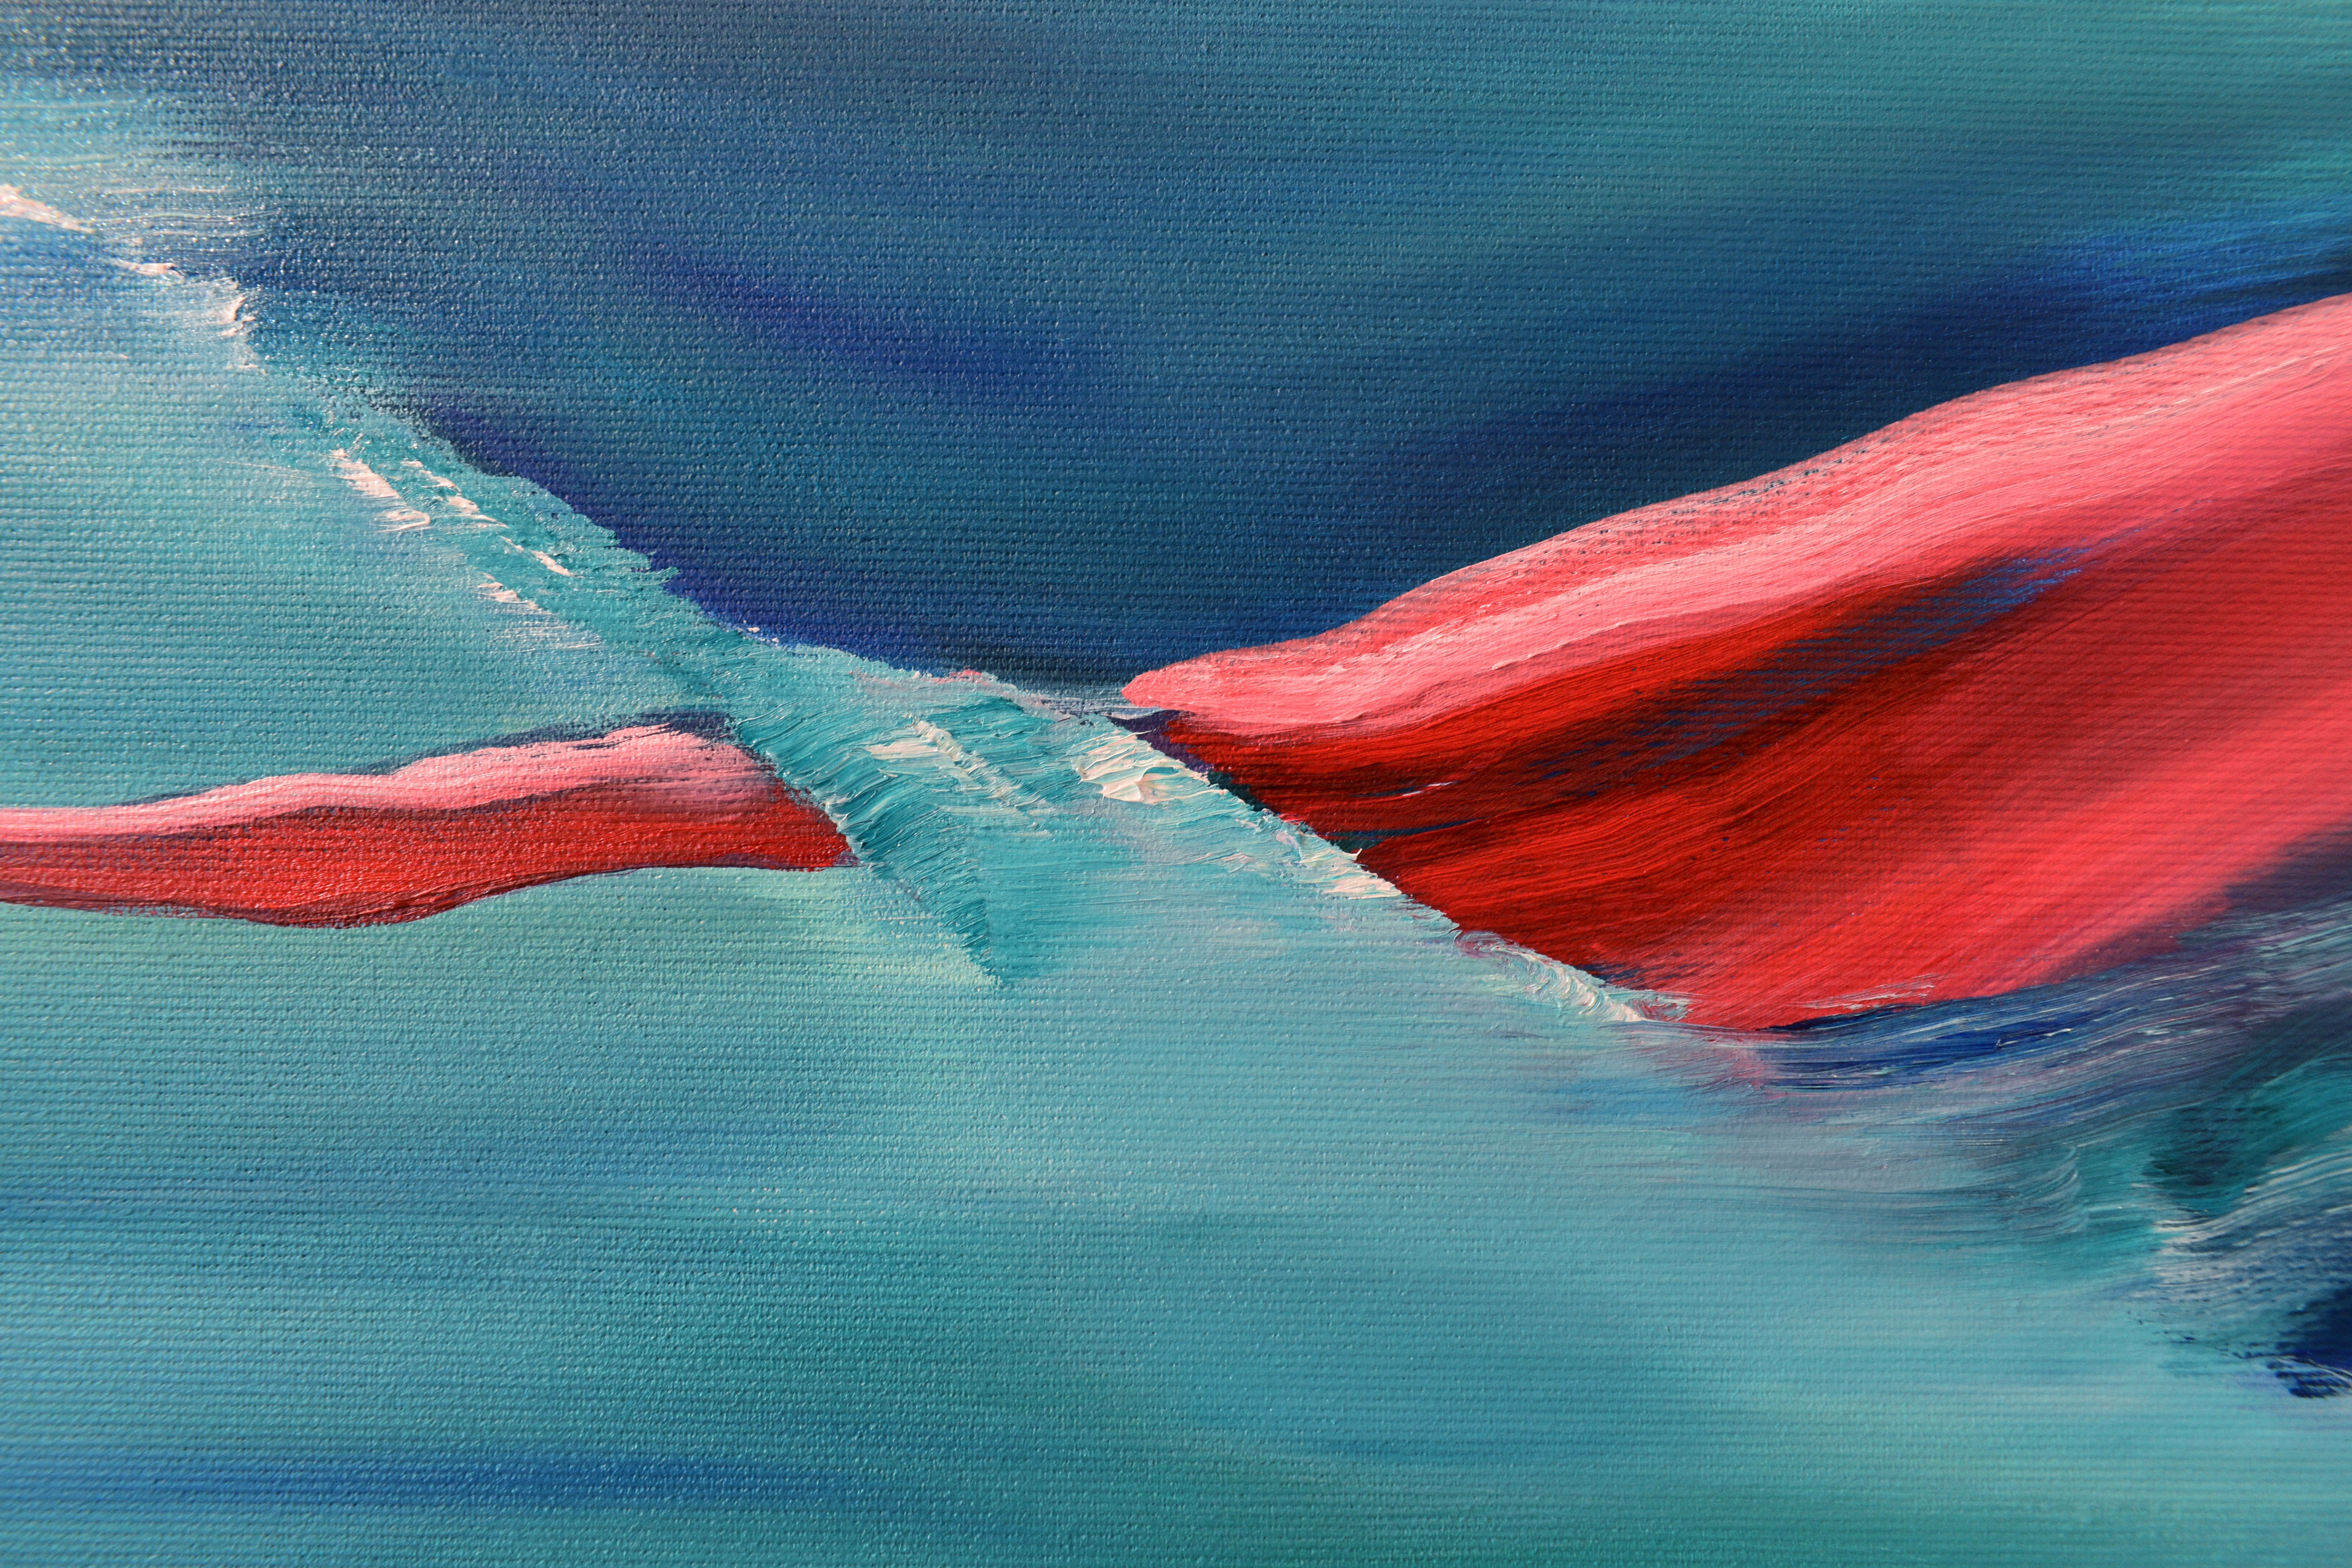 Painting by Marina Venediktova Red whale detail